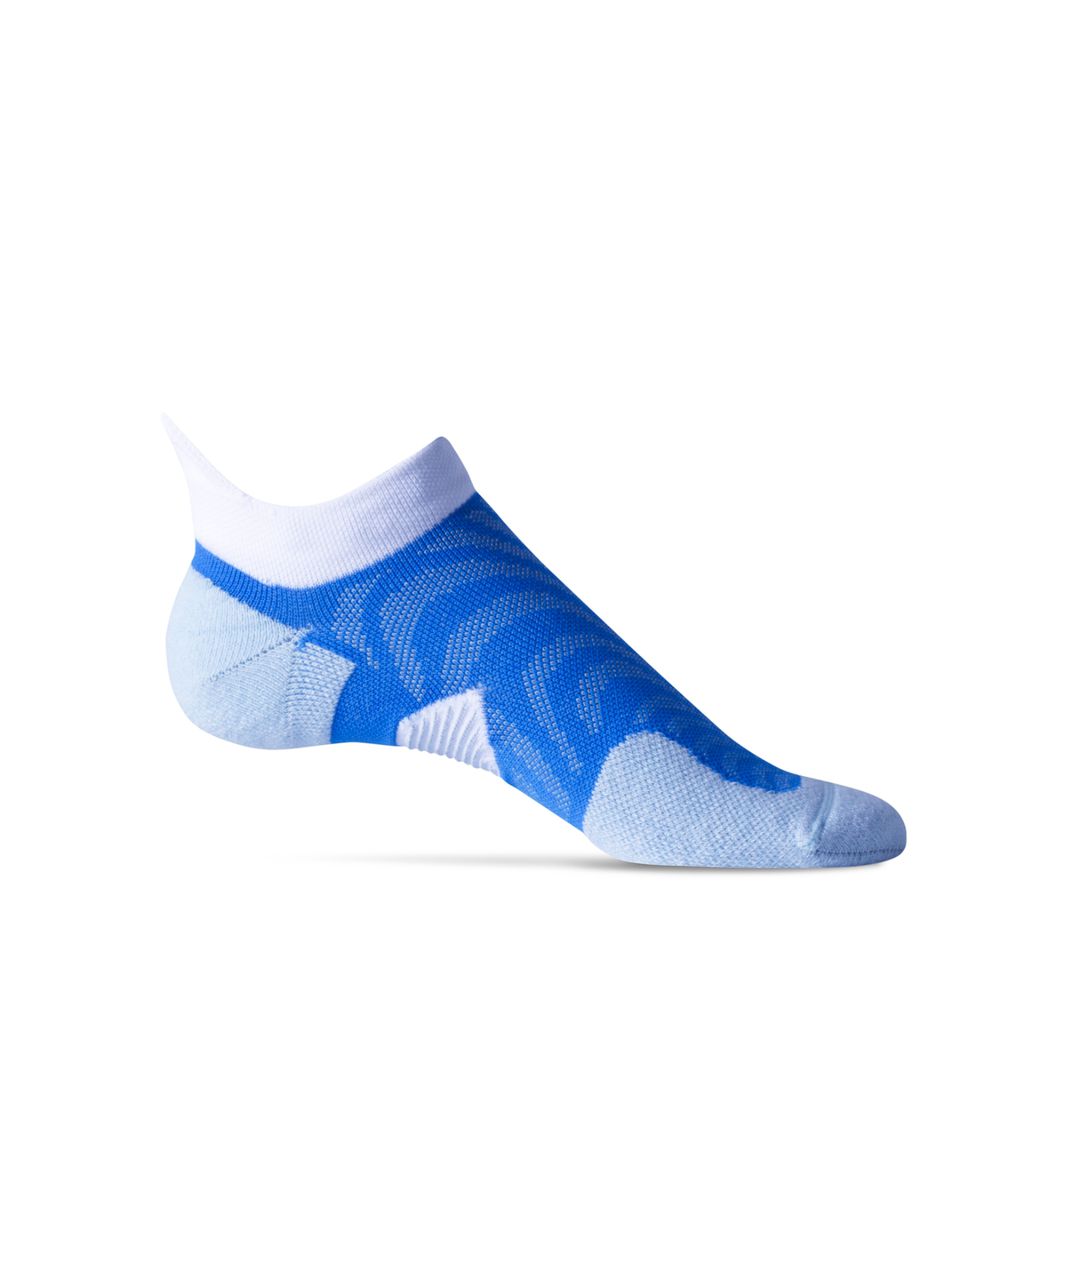 Lululemon Speed Sock *Silver - Pipe Dream Blue / Caspian Blue